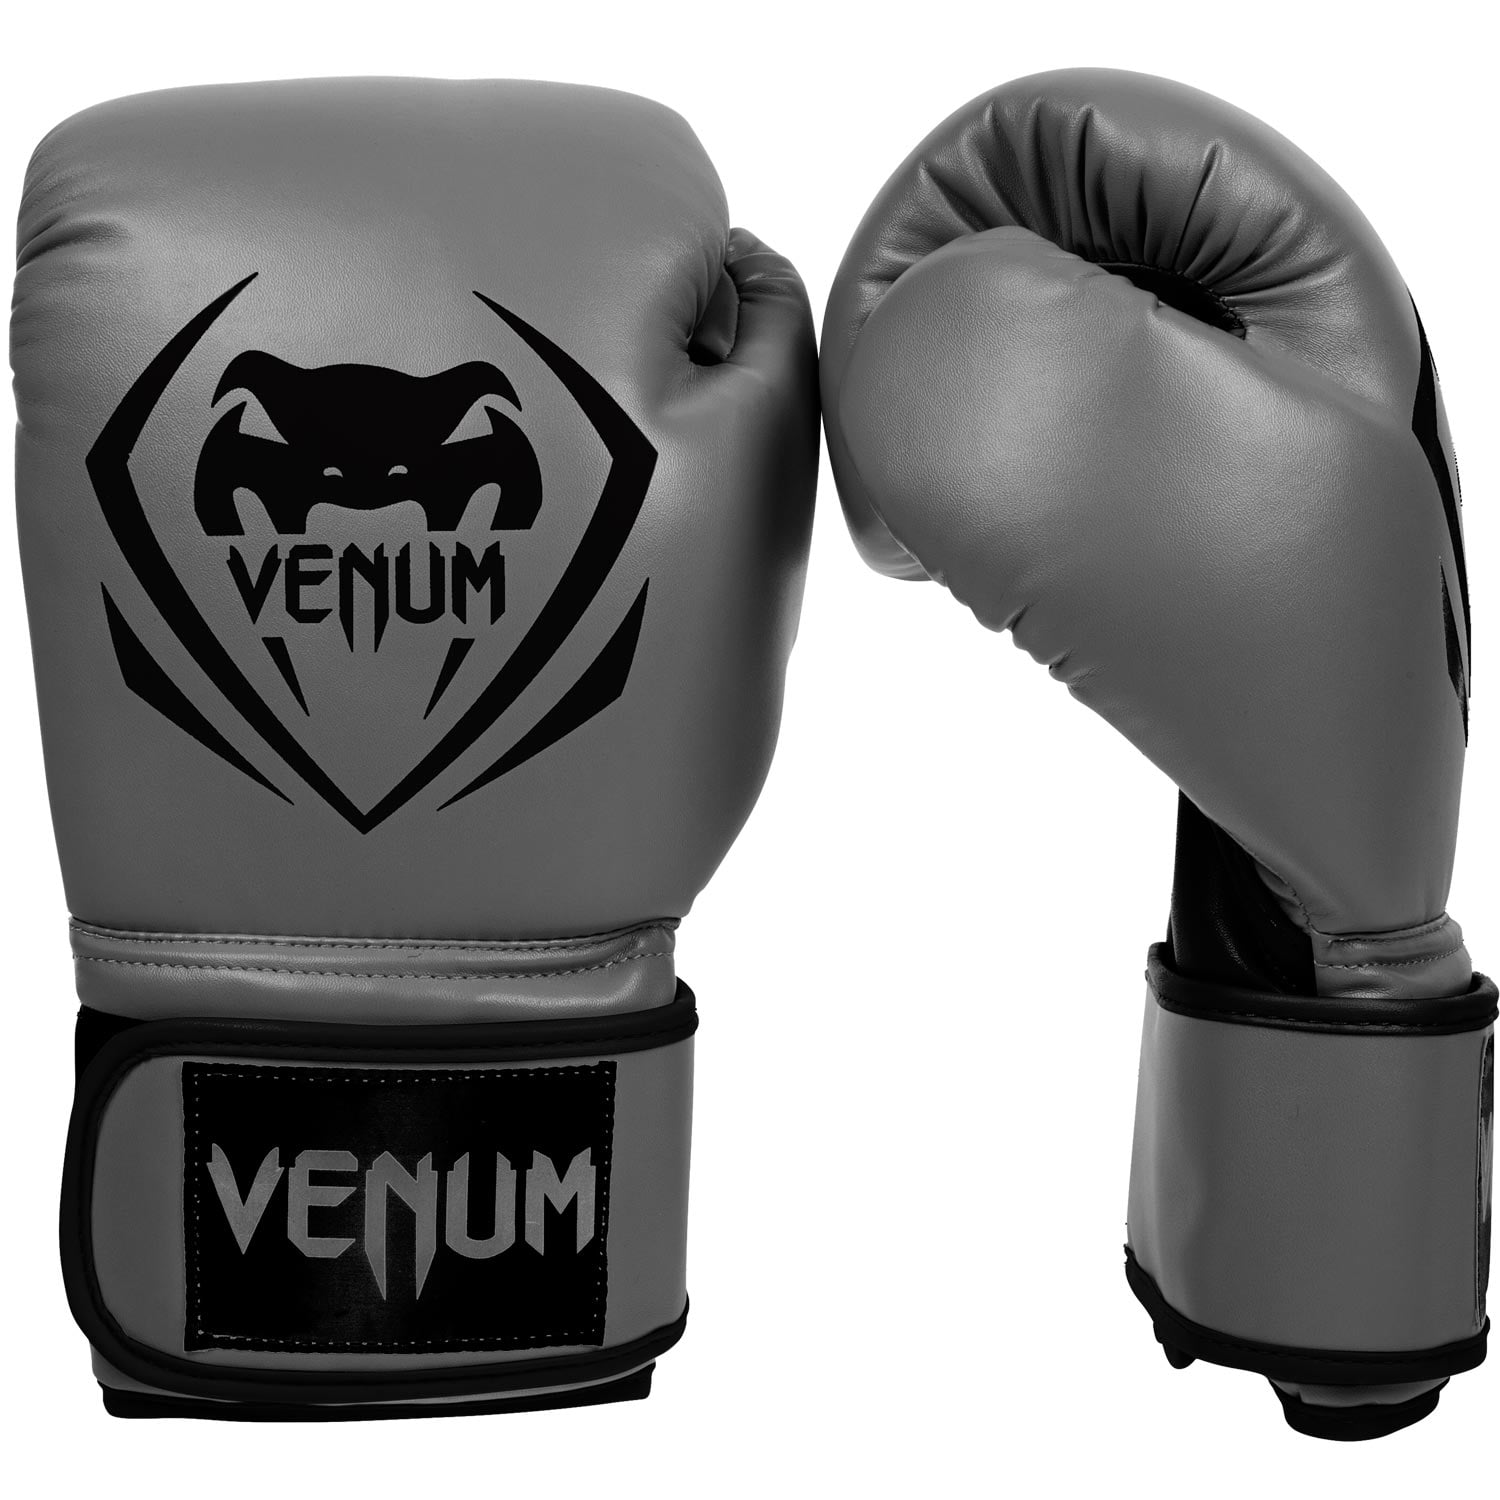 Грей бокс. Боксерские перчатки Venum contender. Перчатки боксерские Венум серые. Перчатки Venum contender 1.5. Перчатки Venum для бокса 12 унций.